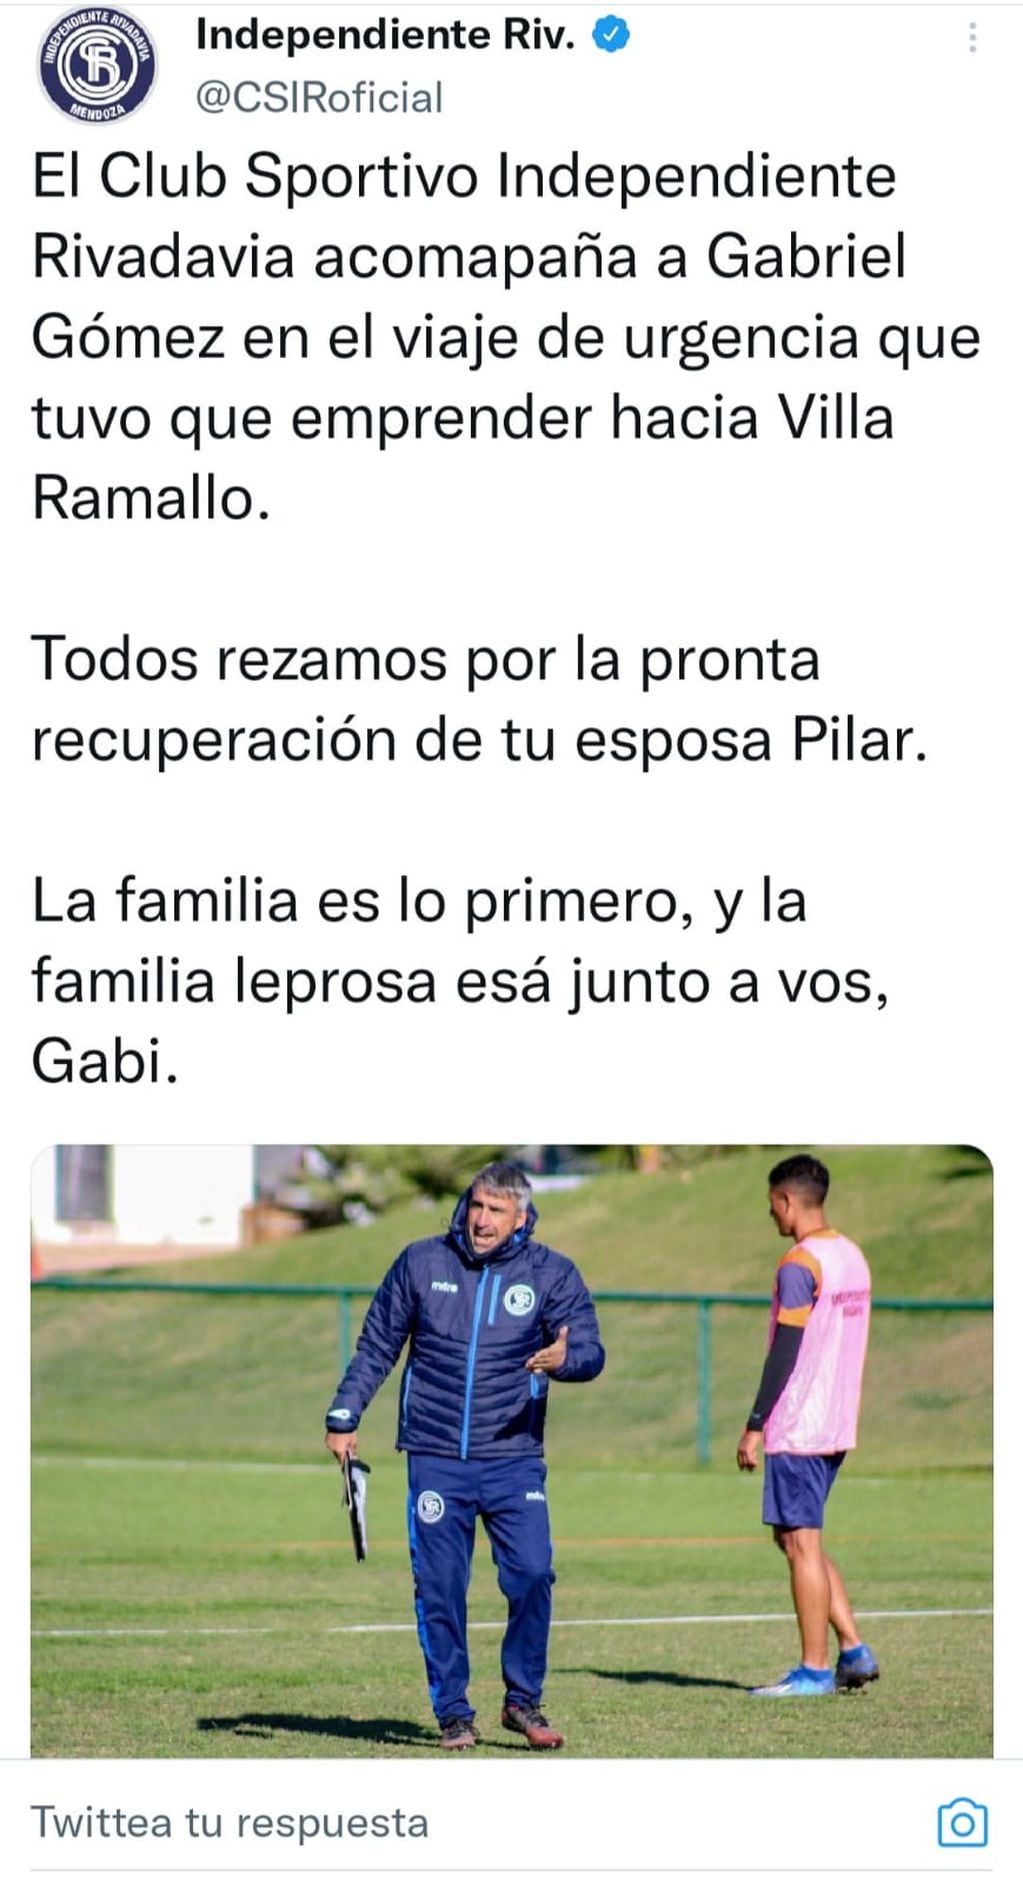 La publicación de Independiente en relación a la situación de Gómez. / Twitter